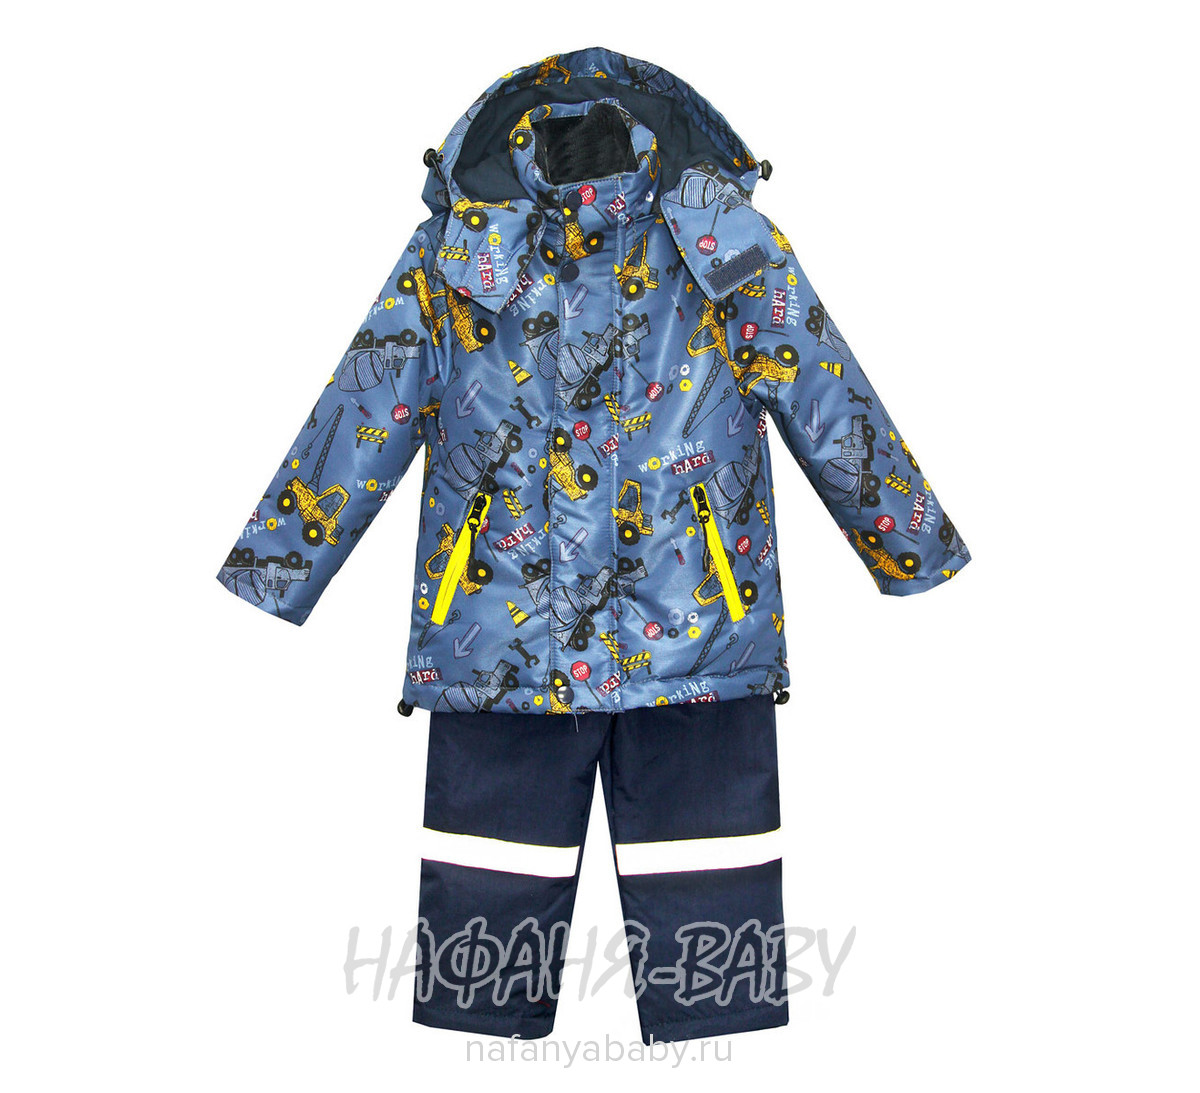 Детский костюм BOTCHKOVA арт: 883, 1-4 года, 5-9 лет, цвет куртка синий, полукомбинезон темно-синий, оптом Китай (Пекин)